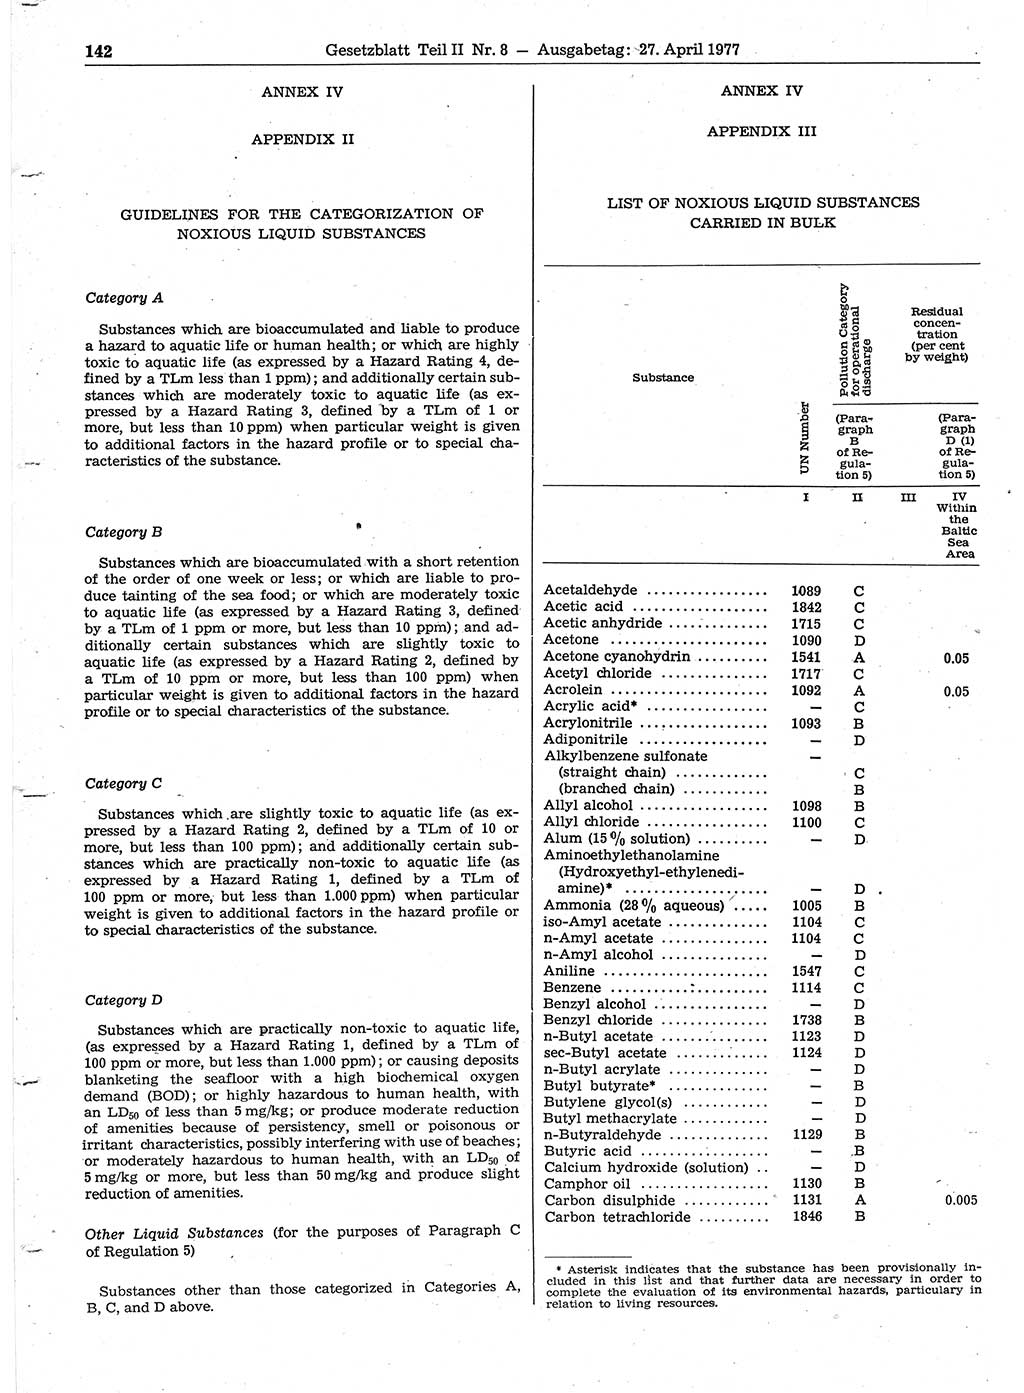 Gesetzblatt (GBl.) der Deutschen Demokratischen Republik (DDR) Teil ⅠⅠ 1977, Seite 142 (GBl. DDR ⅠⅠ 1977, S. 142)